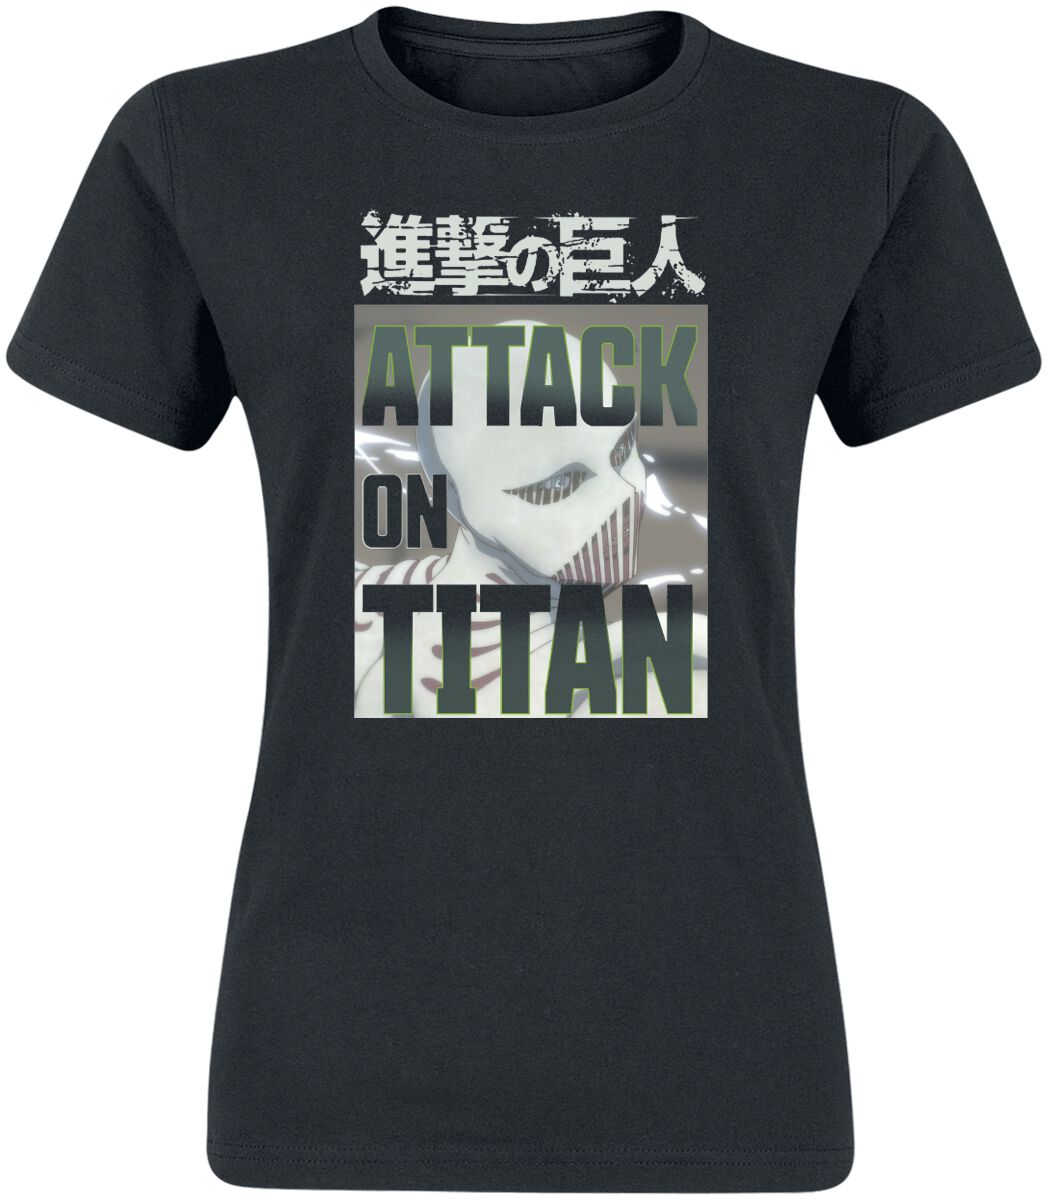 attack on titan - anime t-shirt - white titan face - m bis xxl - fÃ¼r damen - grÃ¶ÃŸe m - - lizenzierter fanartikel schwarz donna